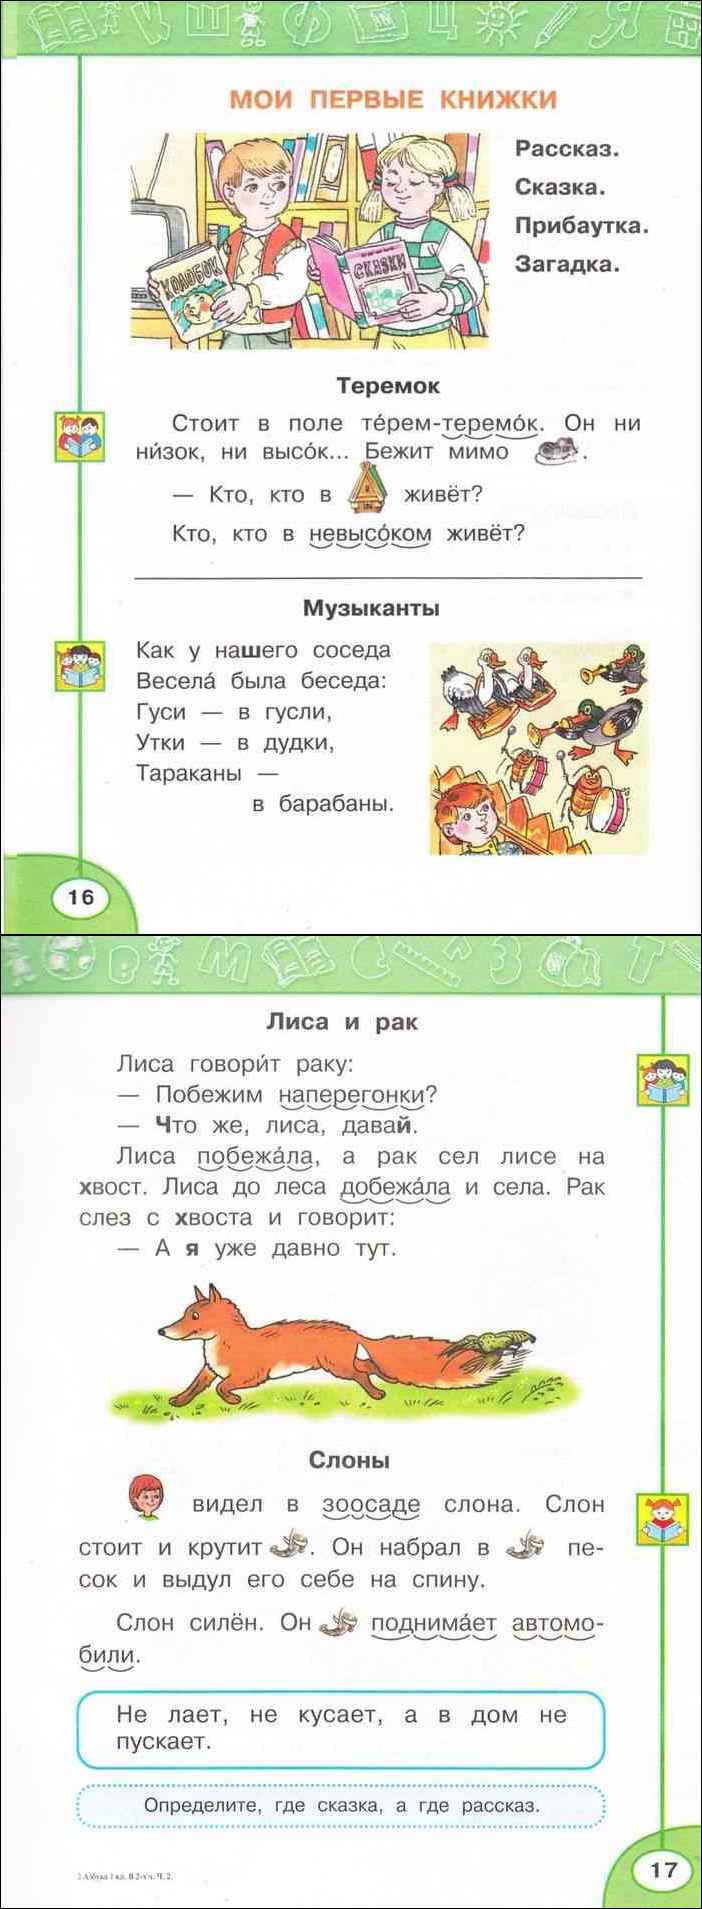 Русский язык климанова макеева ответы. Азбука 1 класс 2 часть Климанова Макеева. Азбука вторая часть 1 класс.